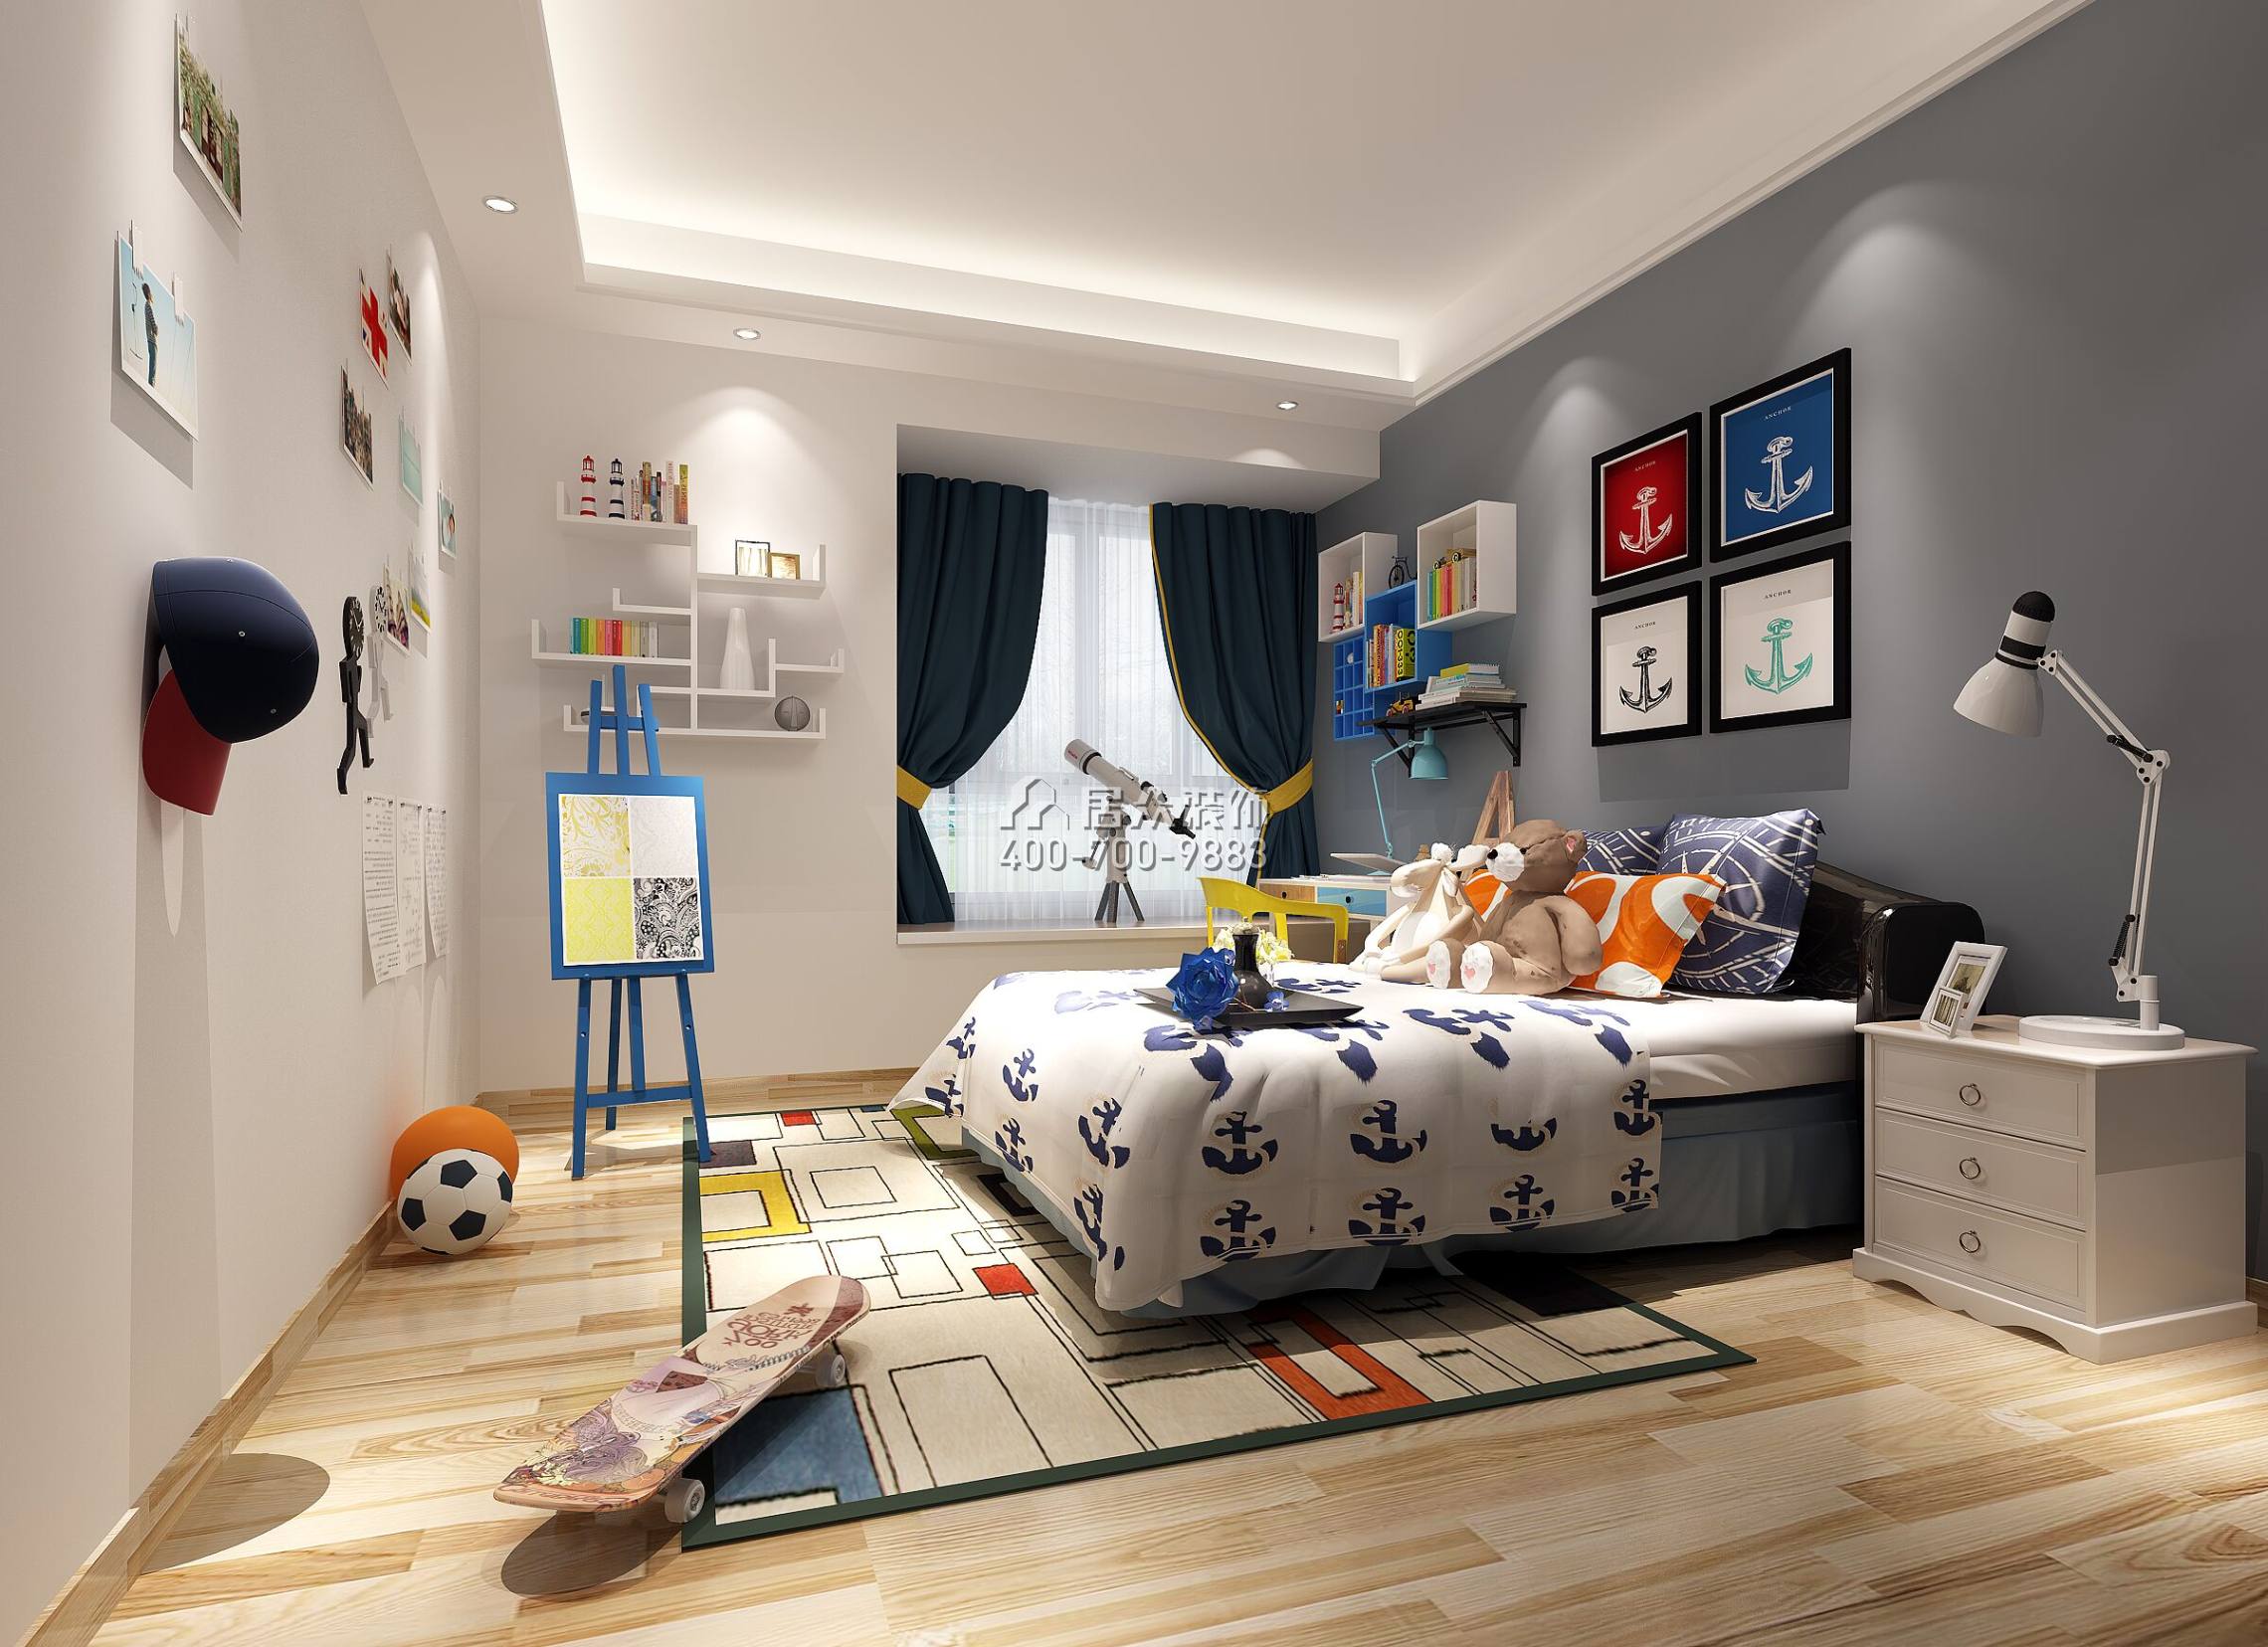 天譽190平方米現代簡約風格平層戶型兒童房裝修效果圖